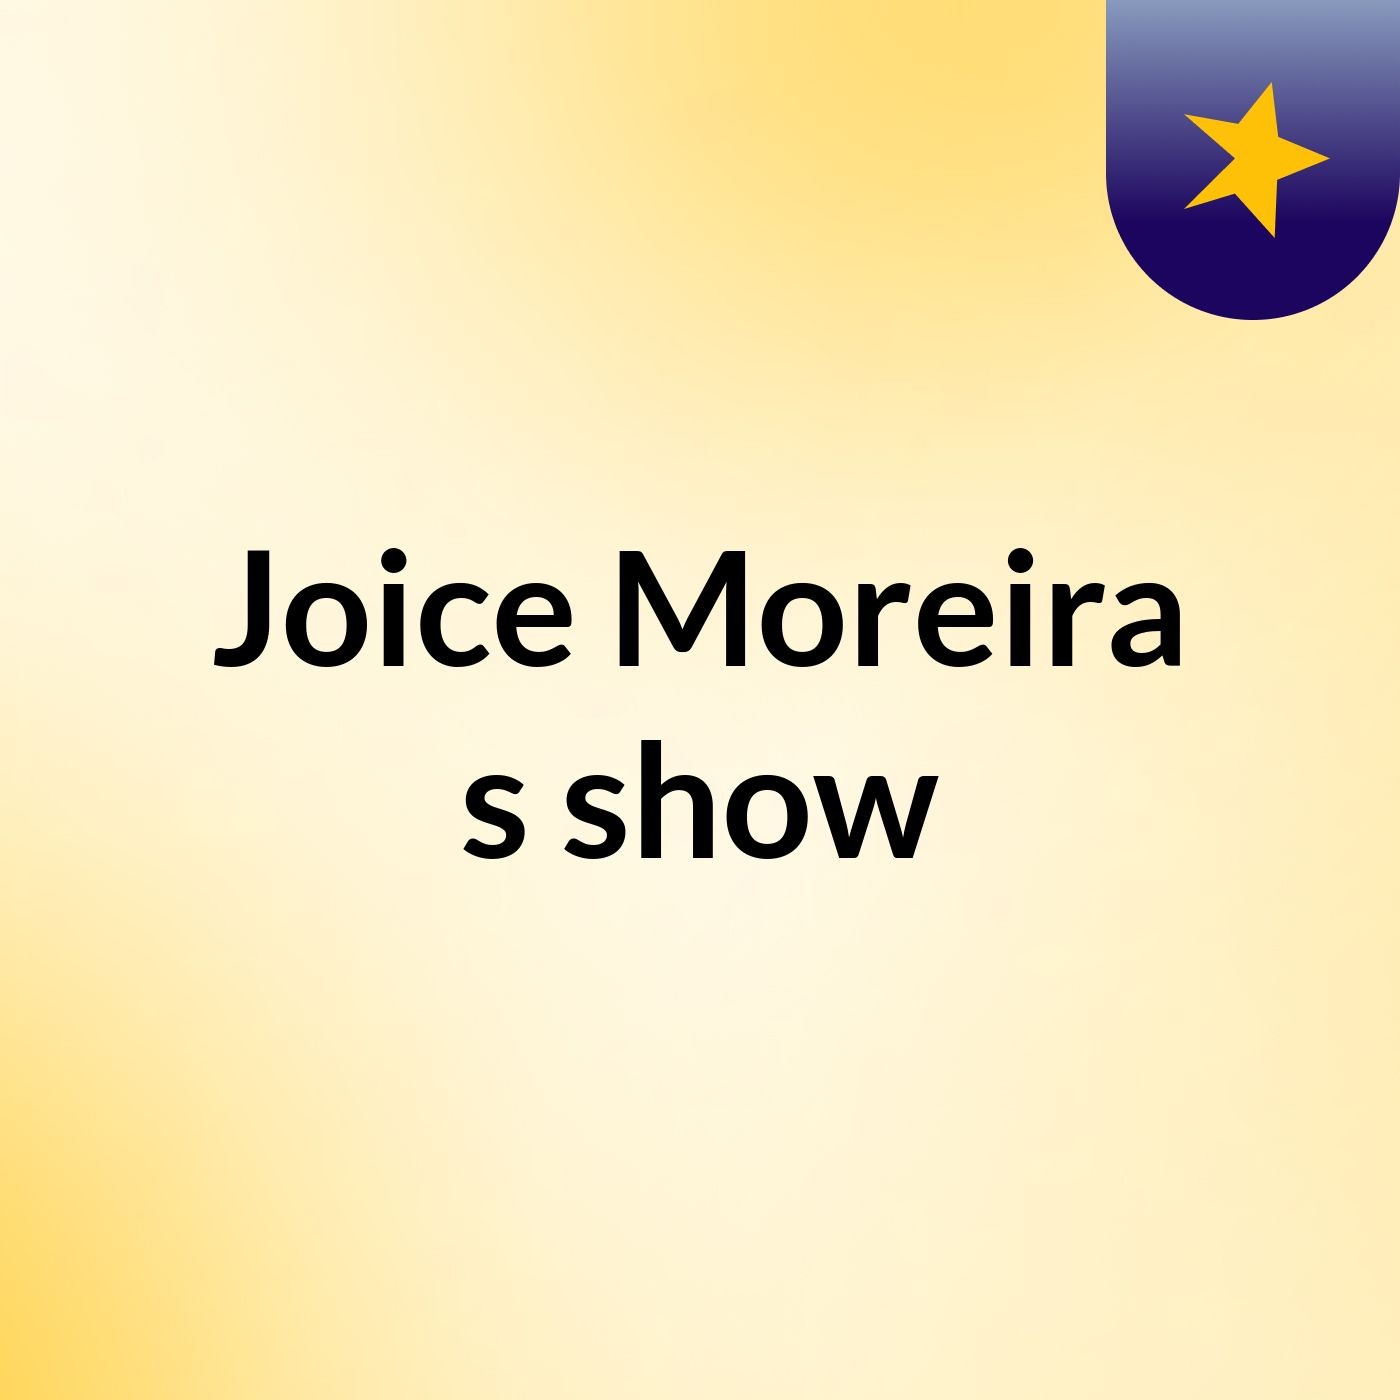 Joice Moreira's show